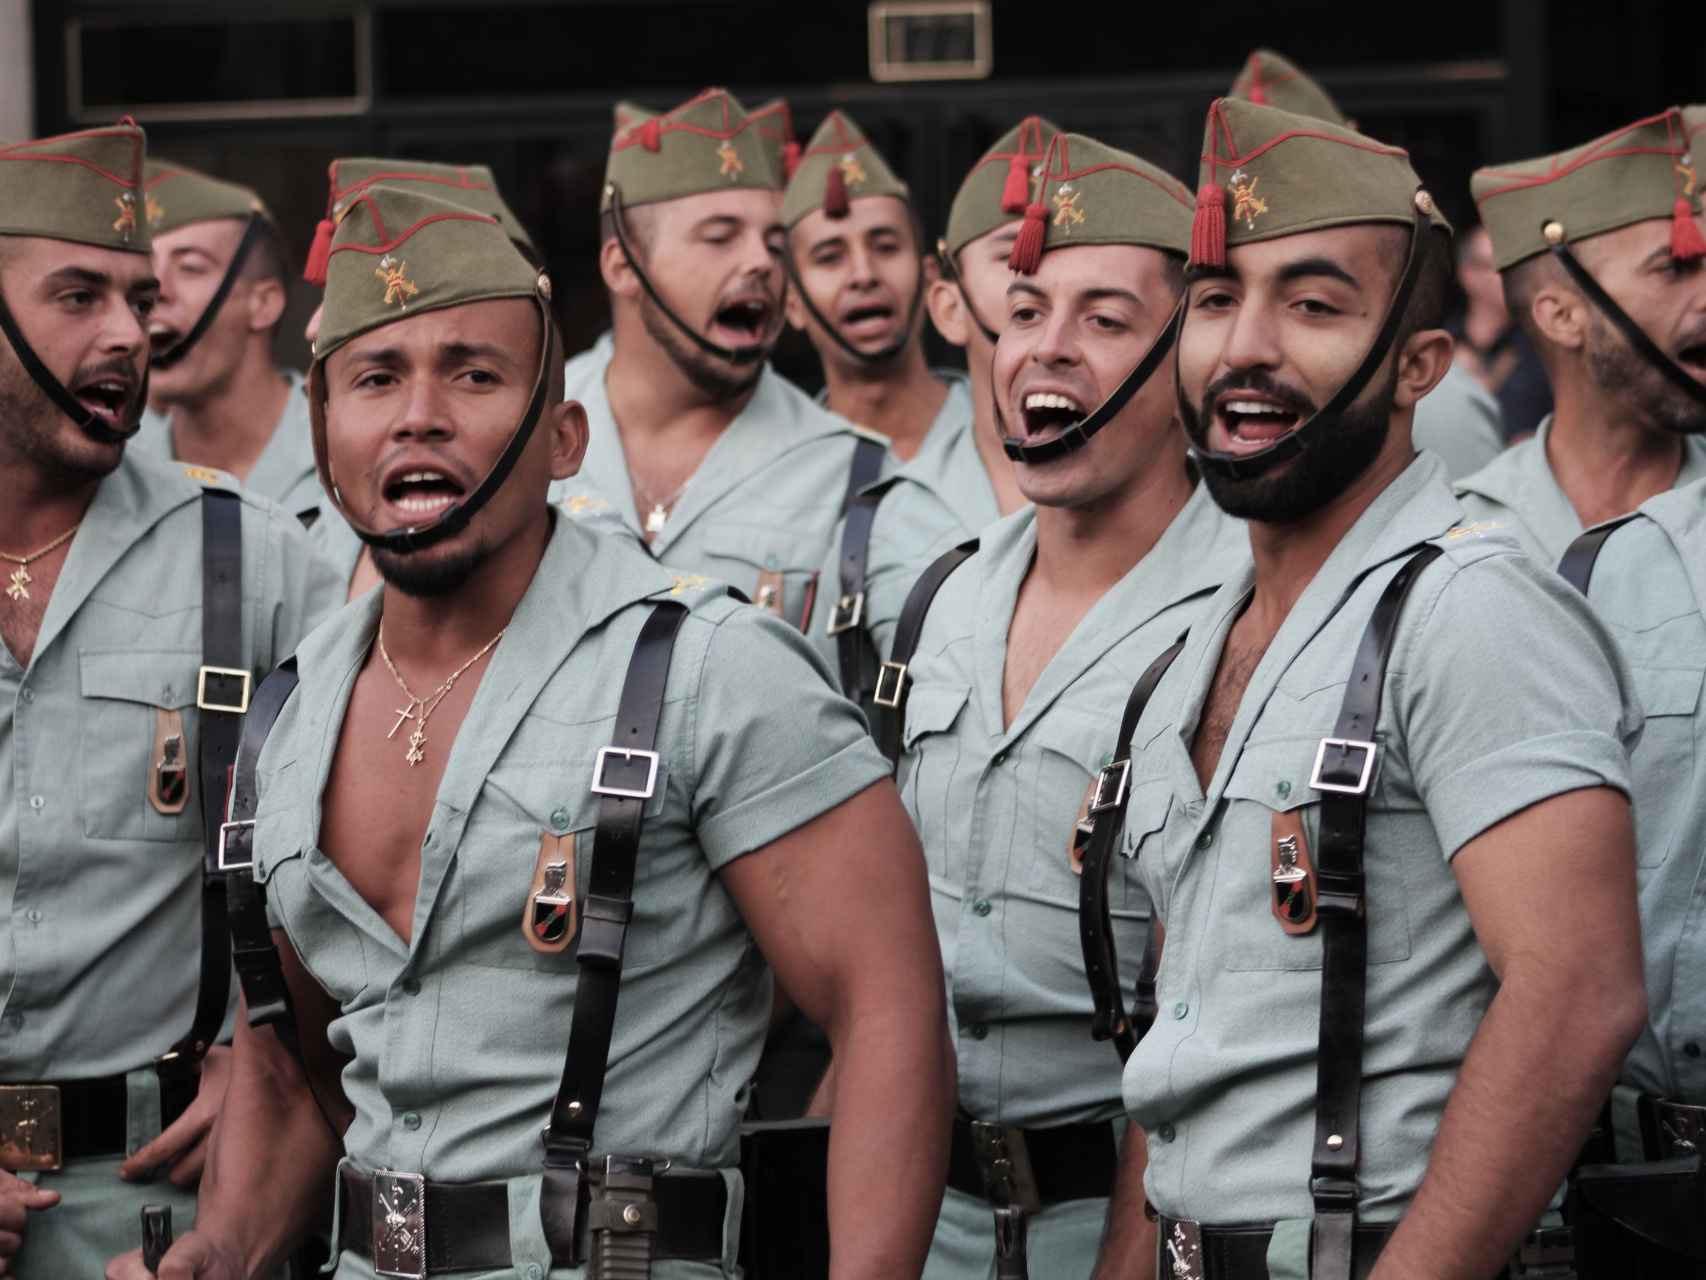 Los ajustados uniformes de la Legión española sacan suspiros